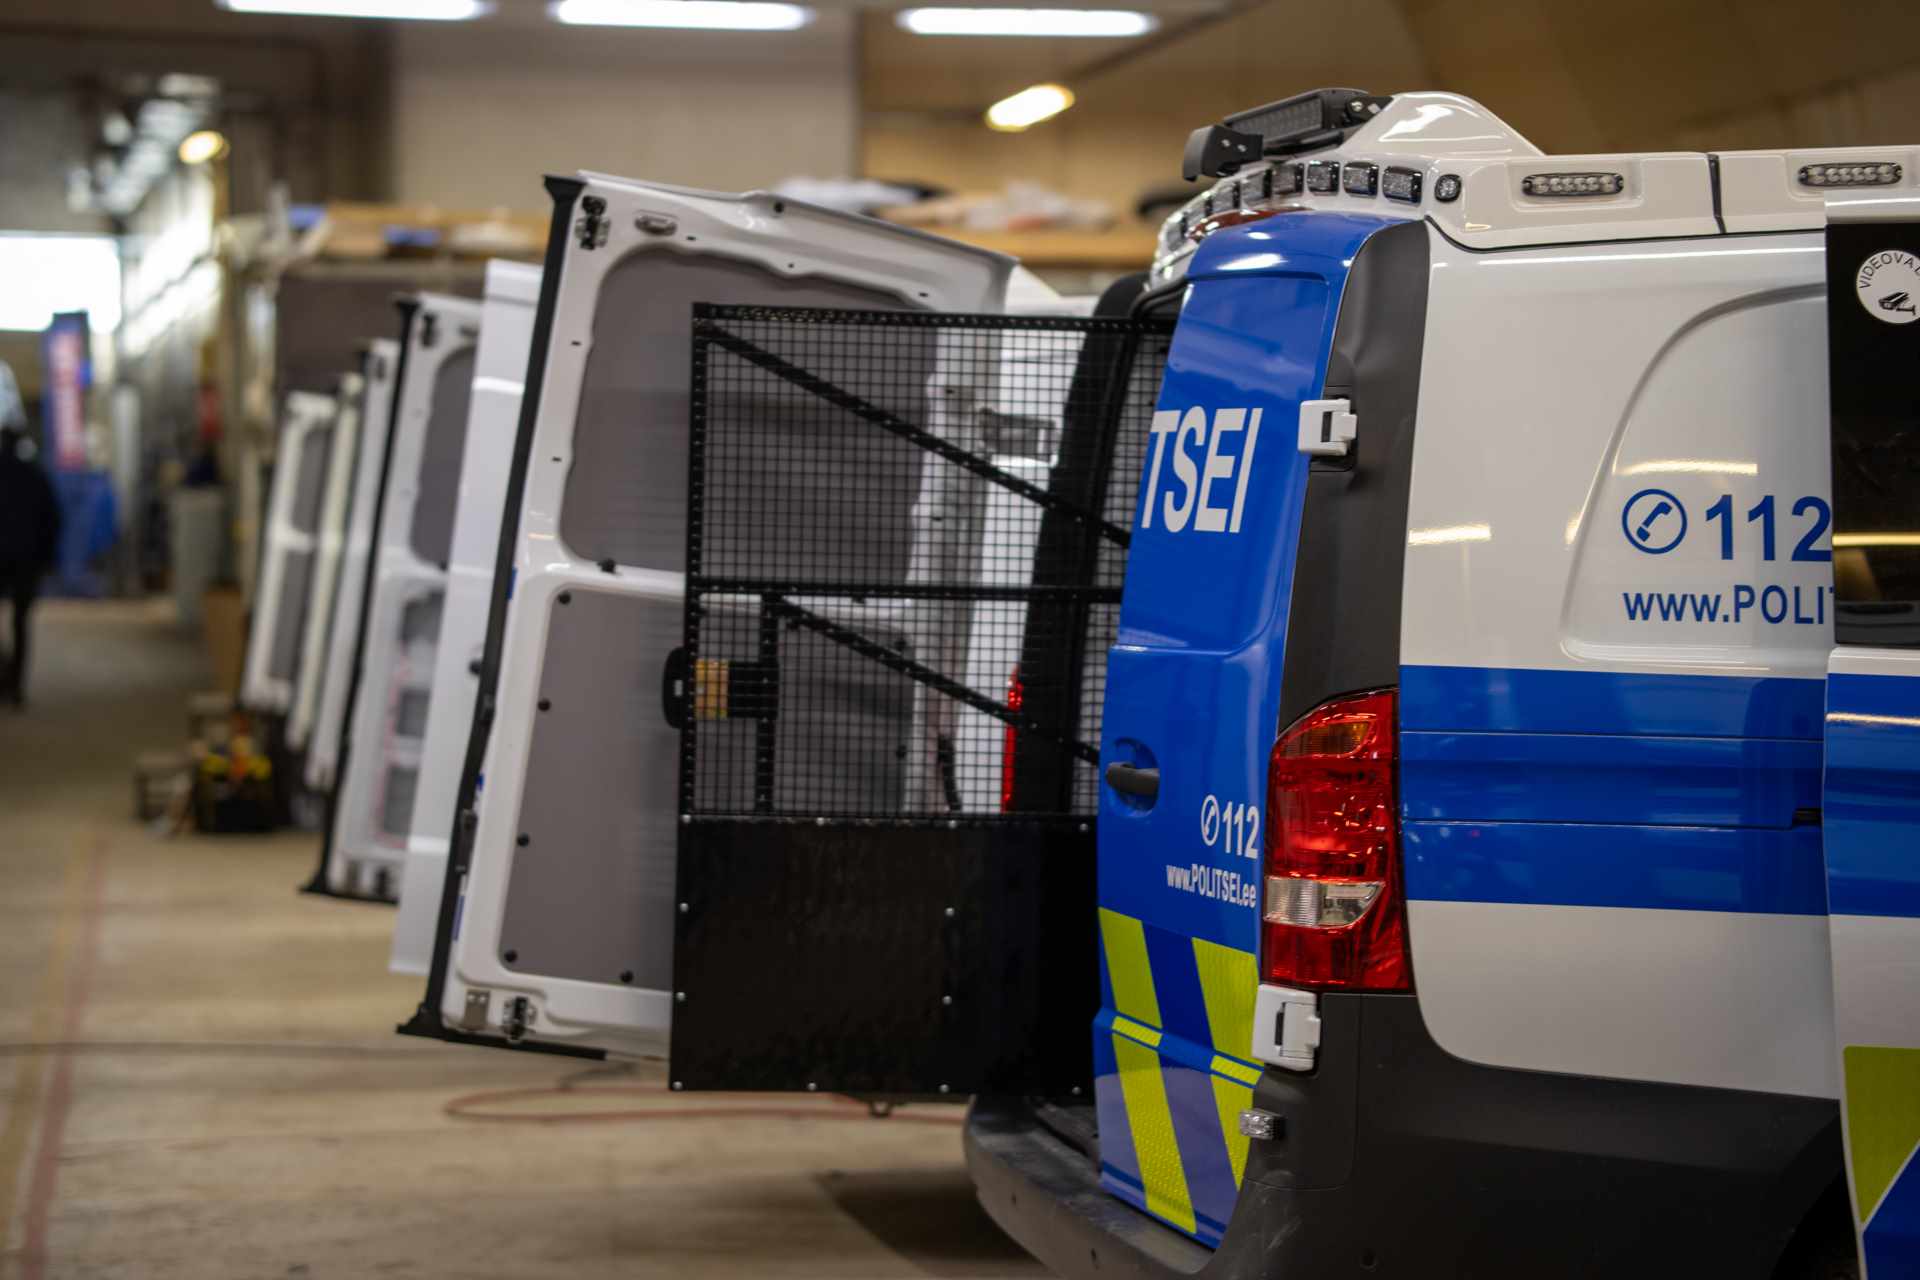 Töökindel tahvelarvuti politsei ja pääste operatiivtöös kinnitab kanda